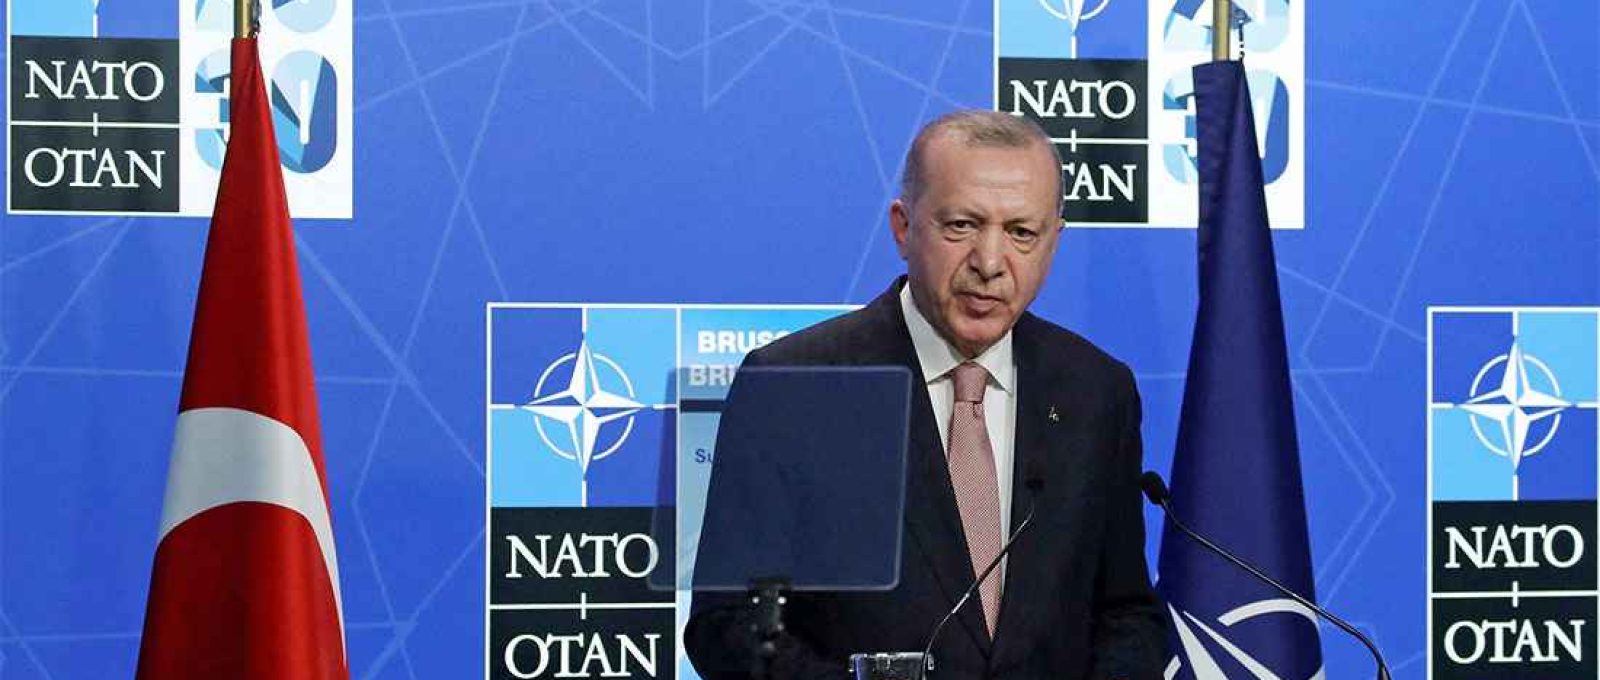 O presidente da Turquia, Recep Tayyip Erdogan, em entrevista coletiva durante uma cúpula da OTAN em Bruxelas, Bélgica, em 14 de junho de 2021 (Yves Herman/Reuters).